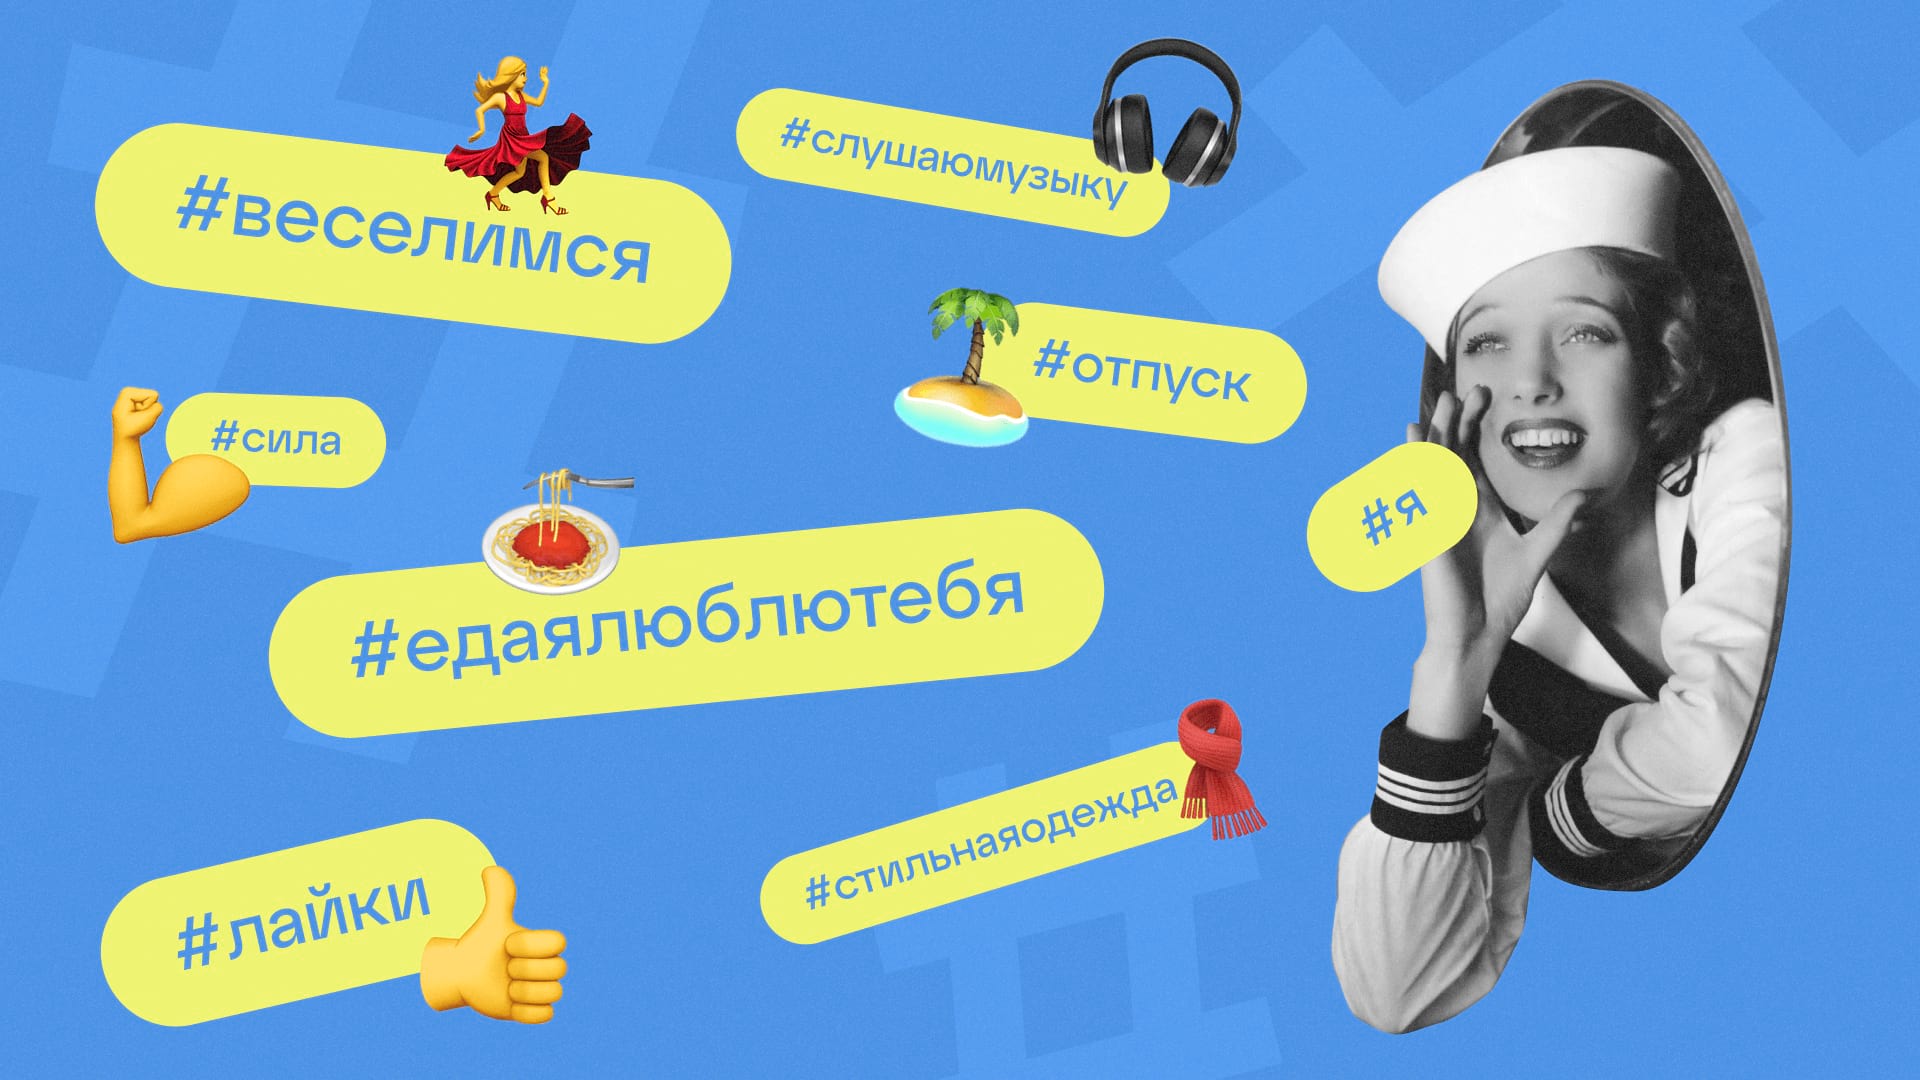 Популярные хештеги во ВКонтакте: зачем и как использовать?